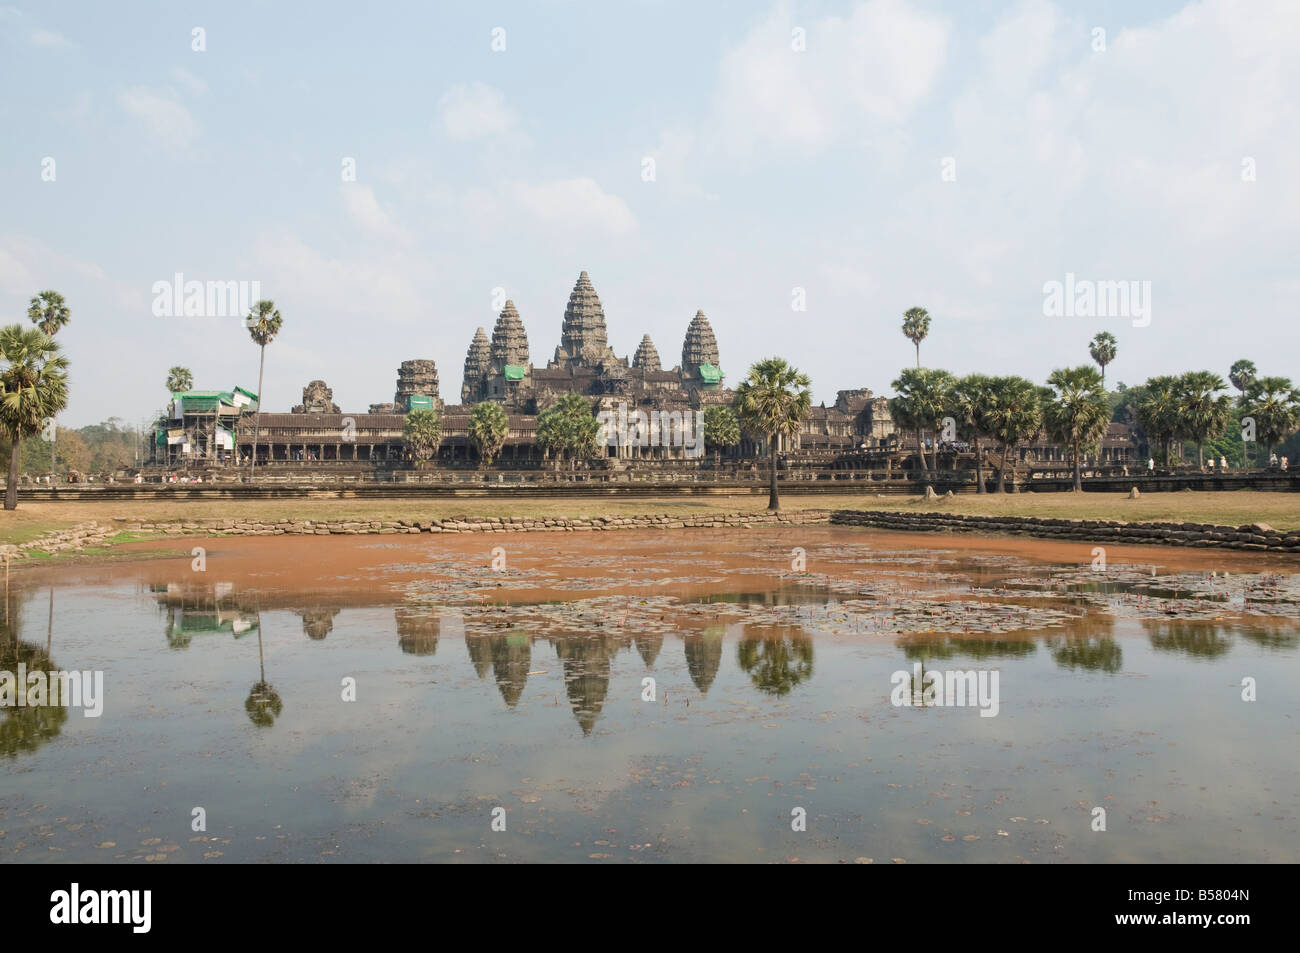 Angkor Wat temple, 12e siècle, khmers, Angkor, Site du patrimoine mondial de l'UNESCO, Siem Reap, Cambodge, Indochine, Asie du Sud-Est, l'Asie Banque D'Images